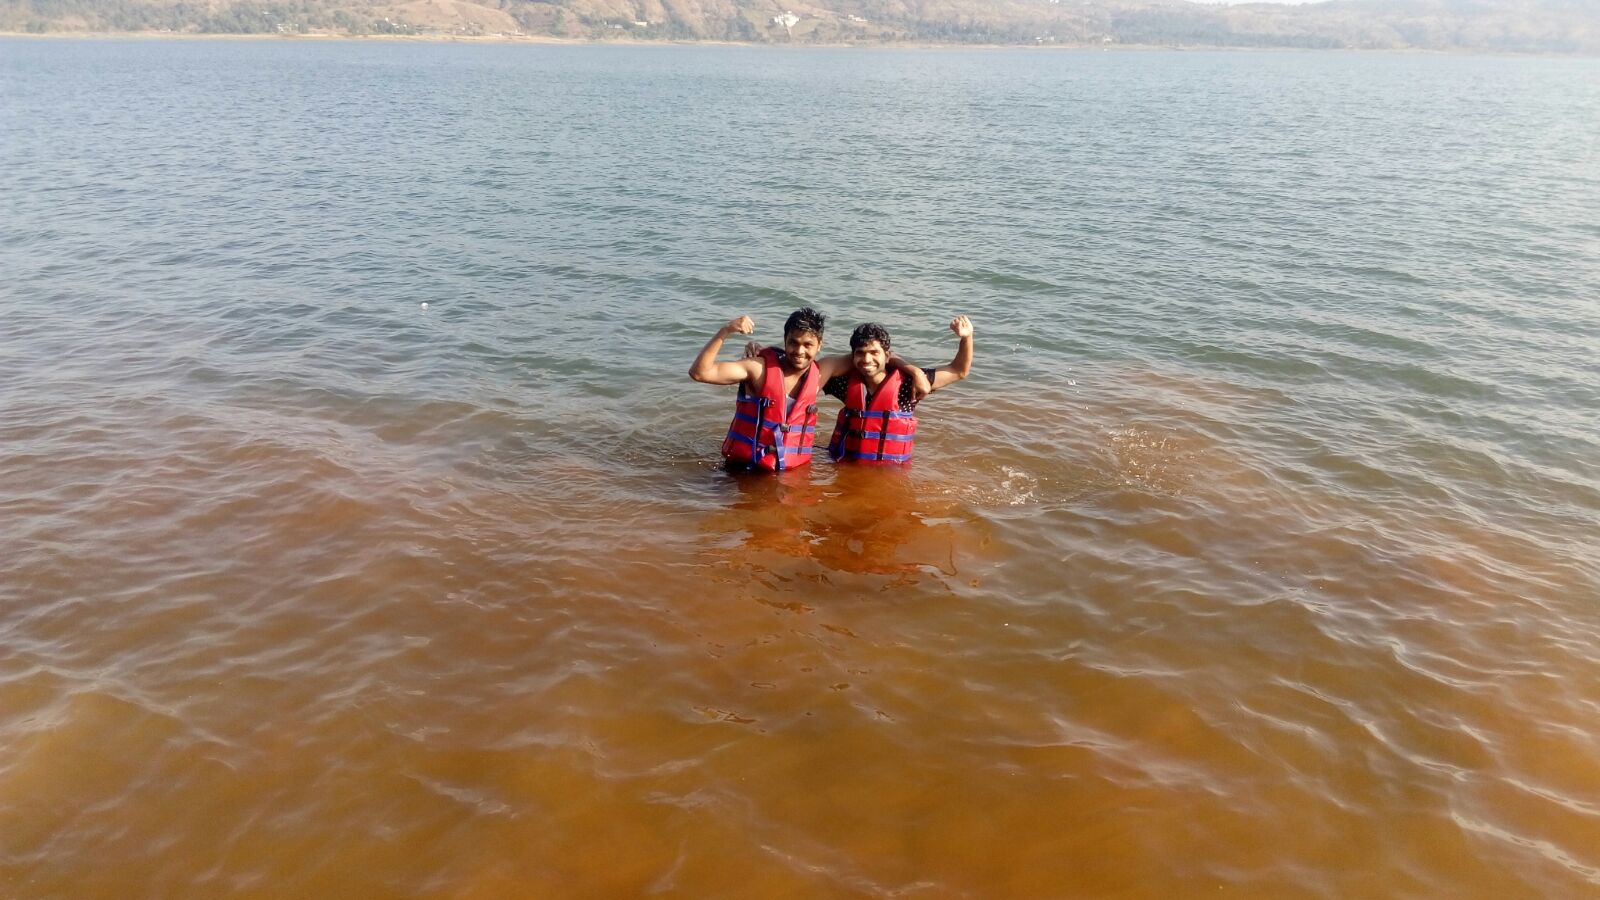 enjoy swimming in the lake